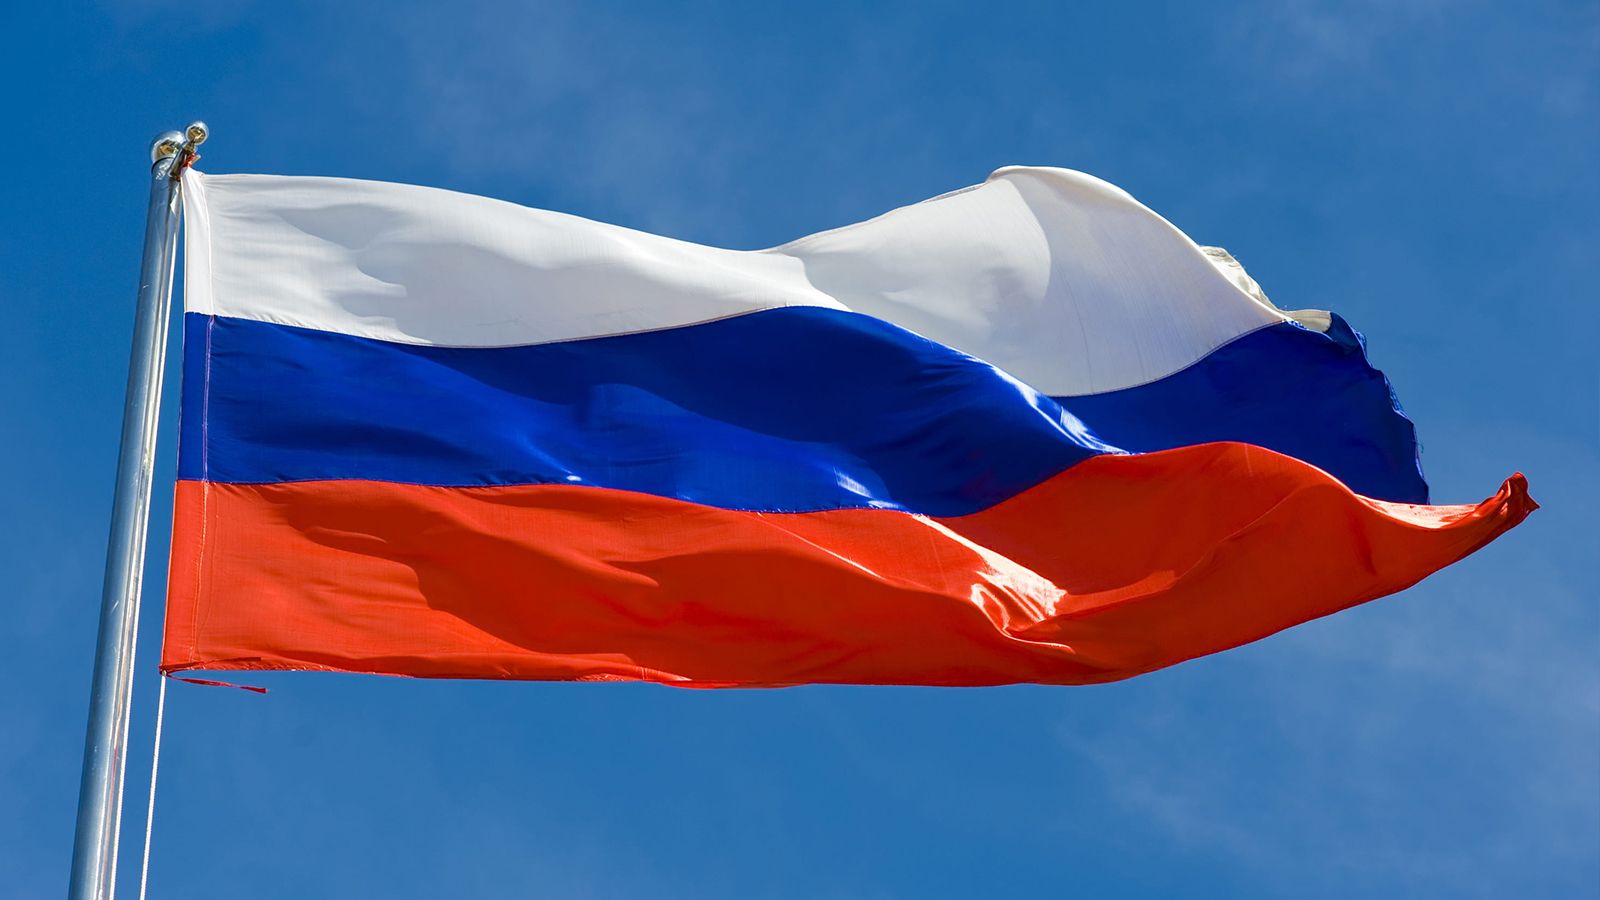 МОК отказался рассматривать возможность допуска российских спортсменов с флагом и гимном